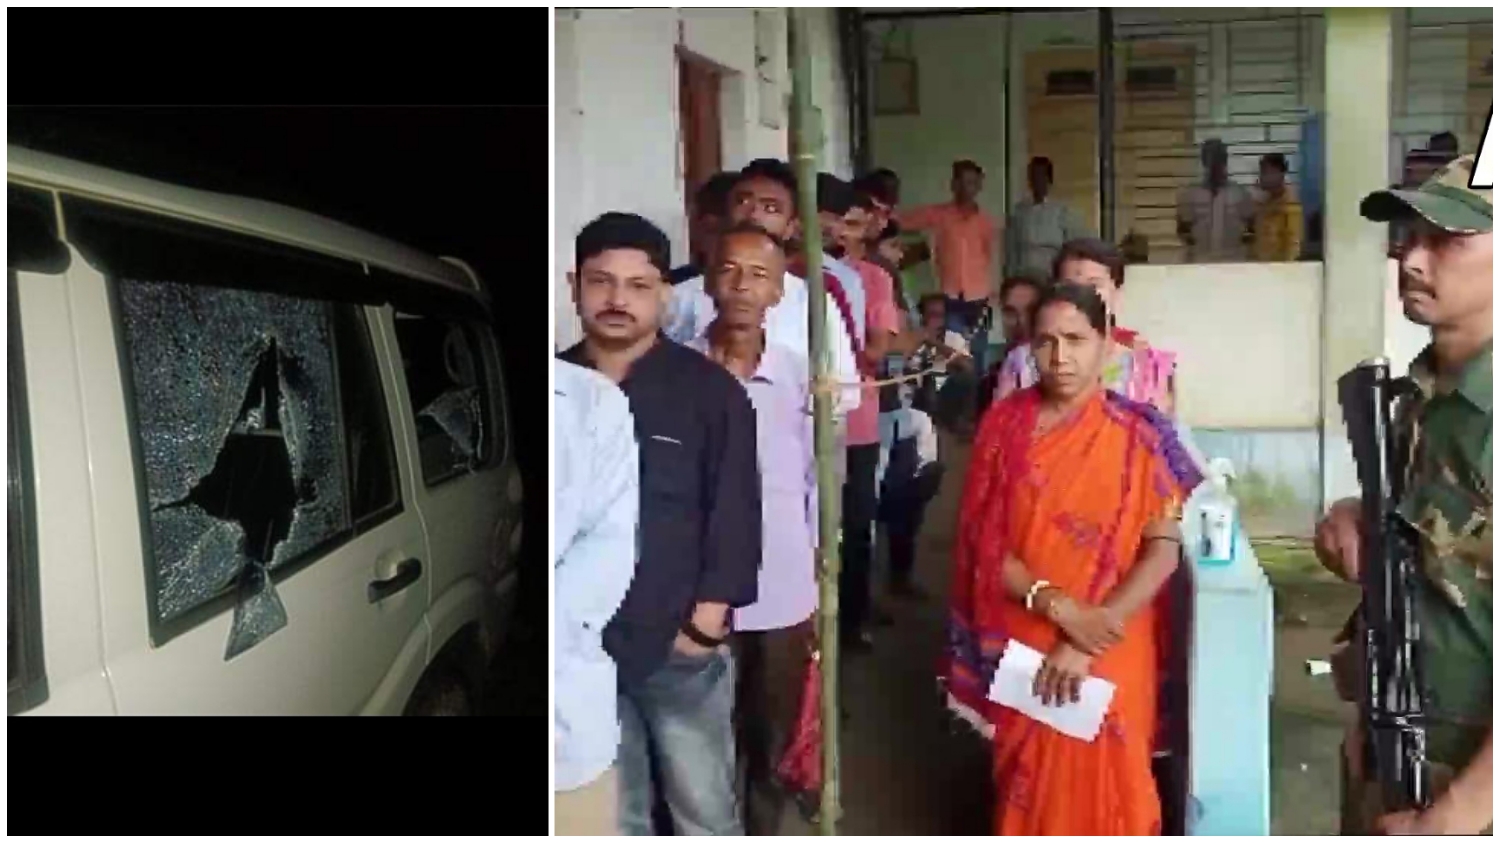 Tripura Election: আক্রান্ত তৃণমূল প্রার্থী! অশান্তির আবহেই ভোটগ্রহণ ত্রিপুরায়